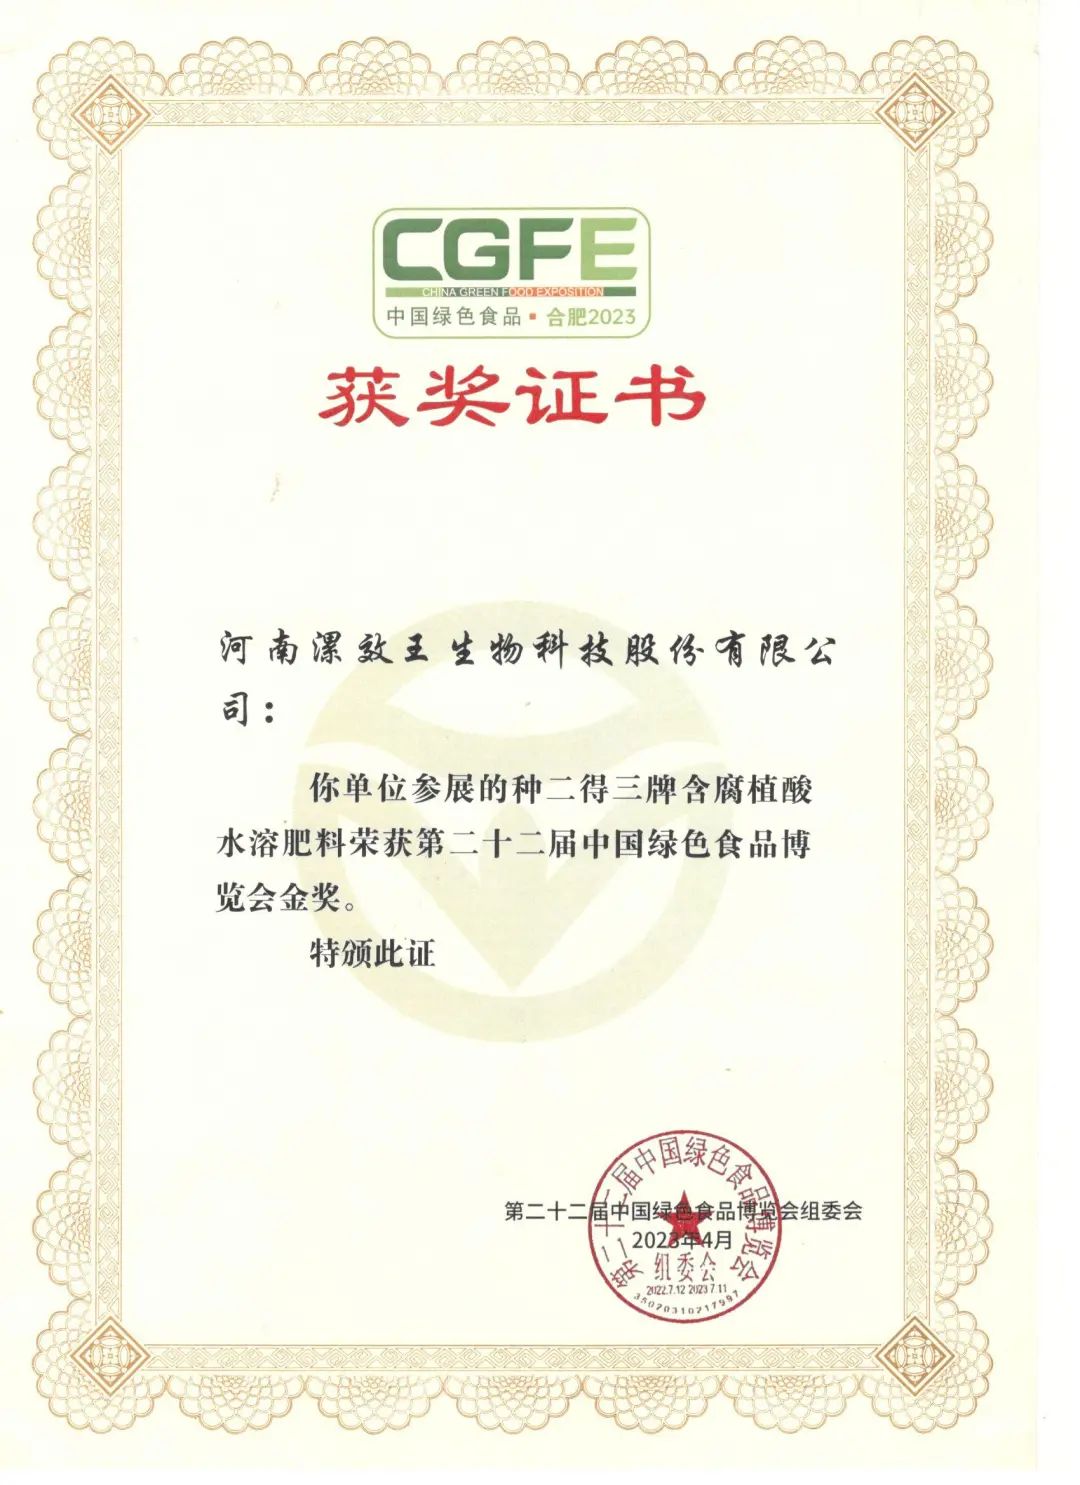 漯效王集团荣获中国绿色食品博览会金奖